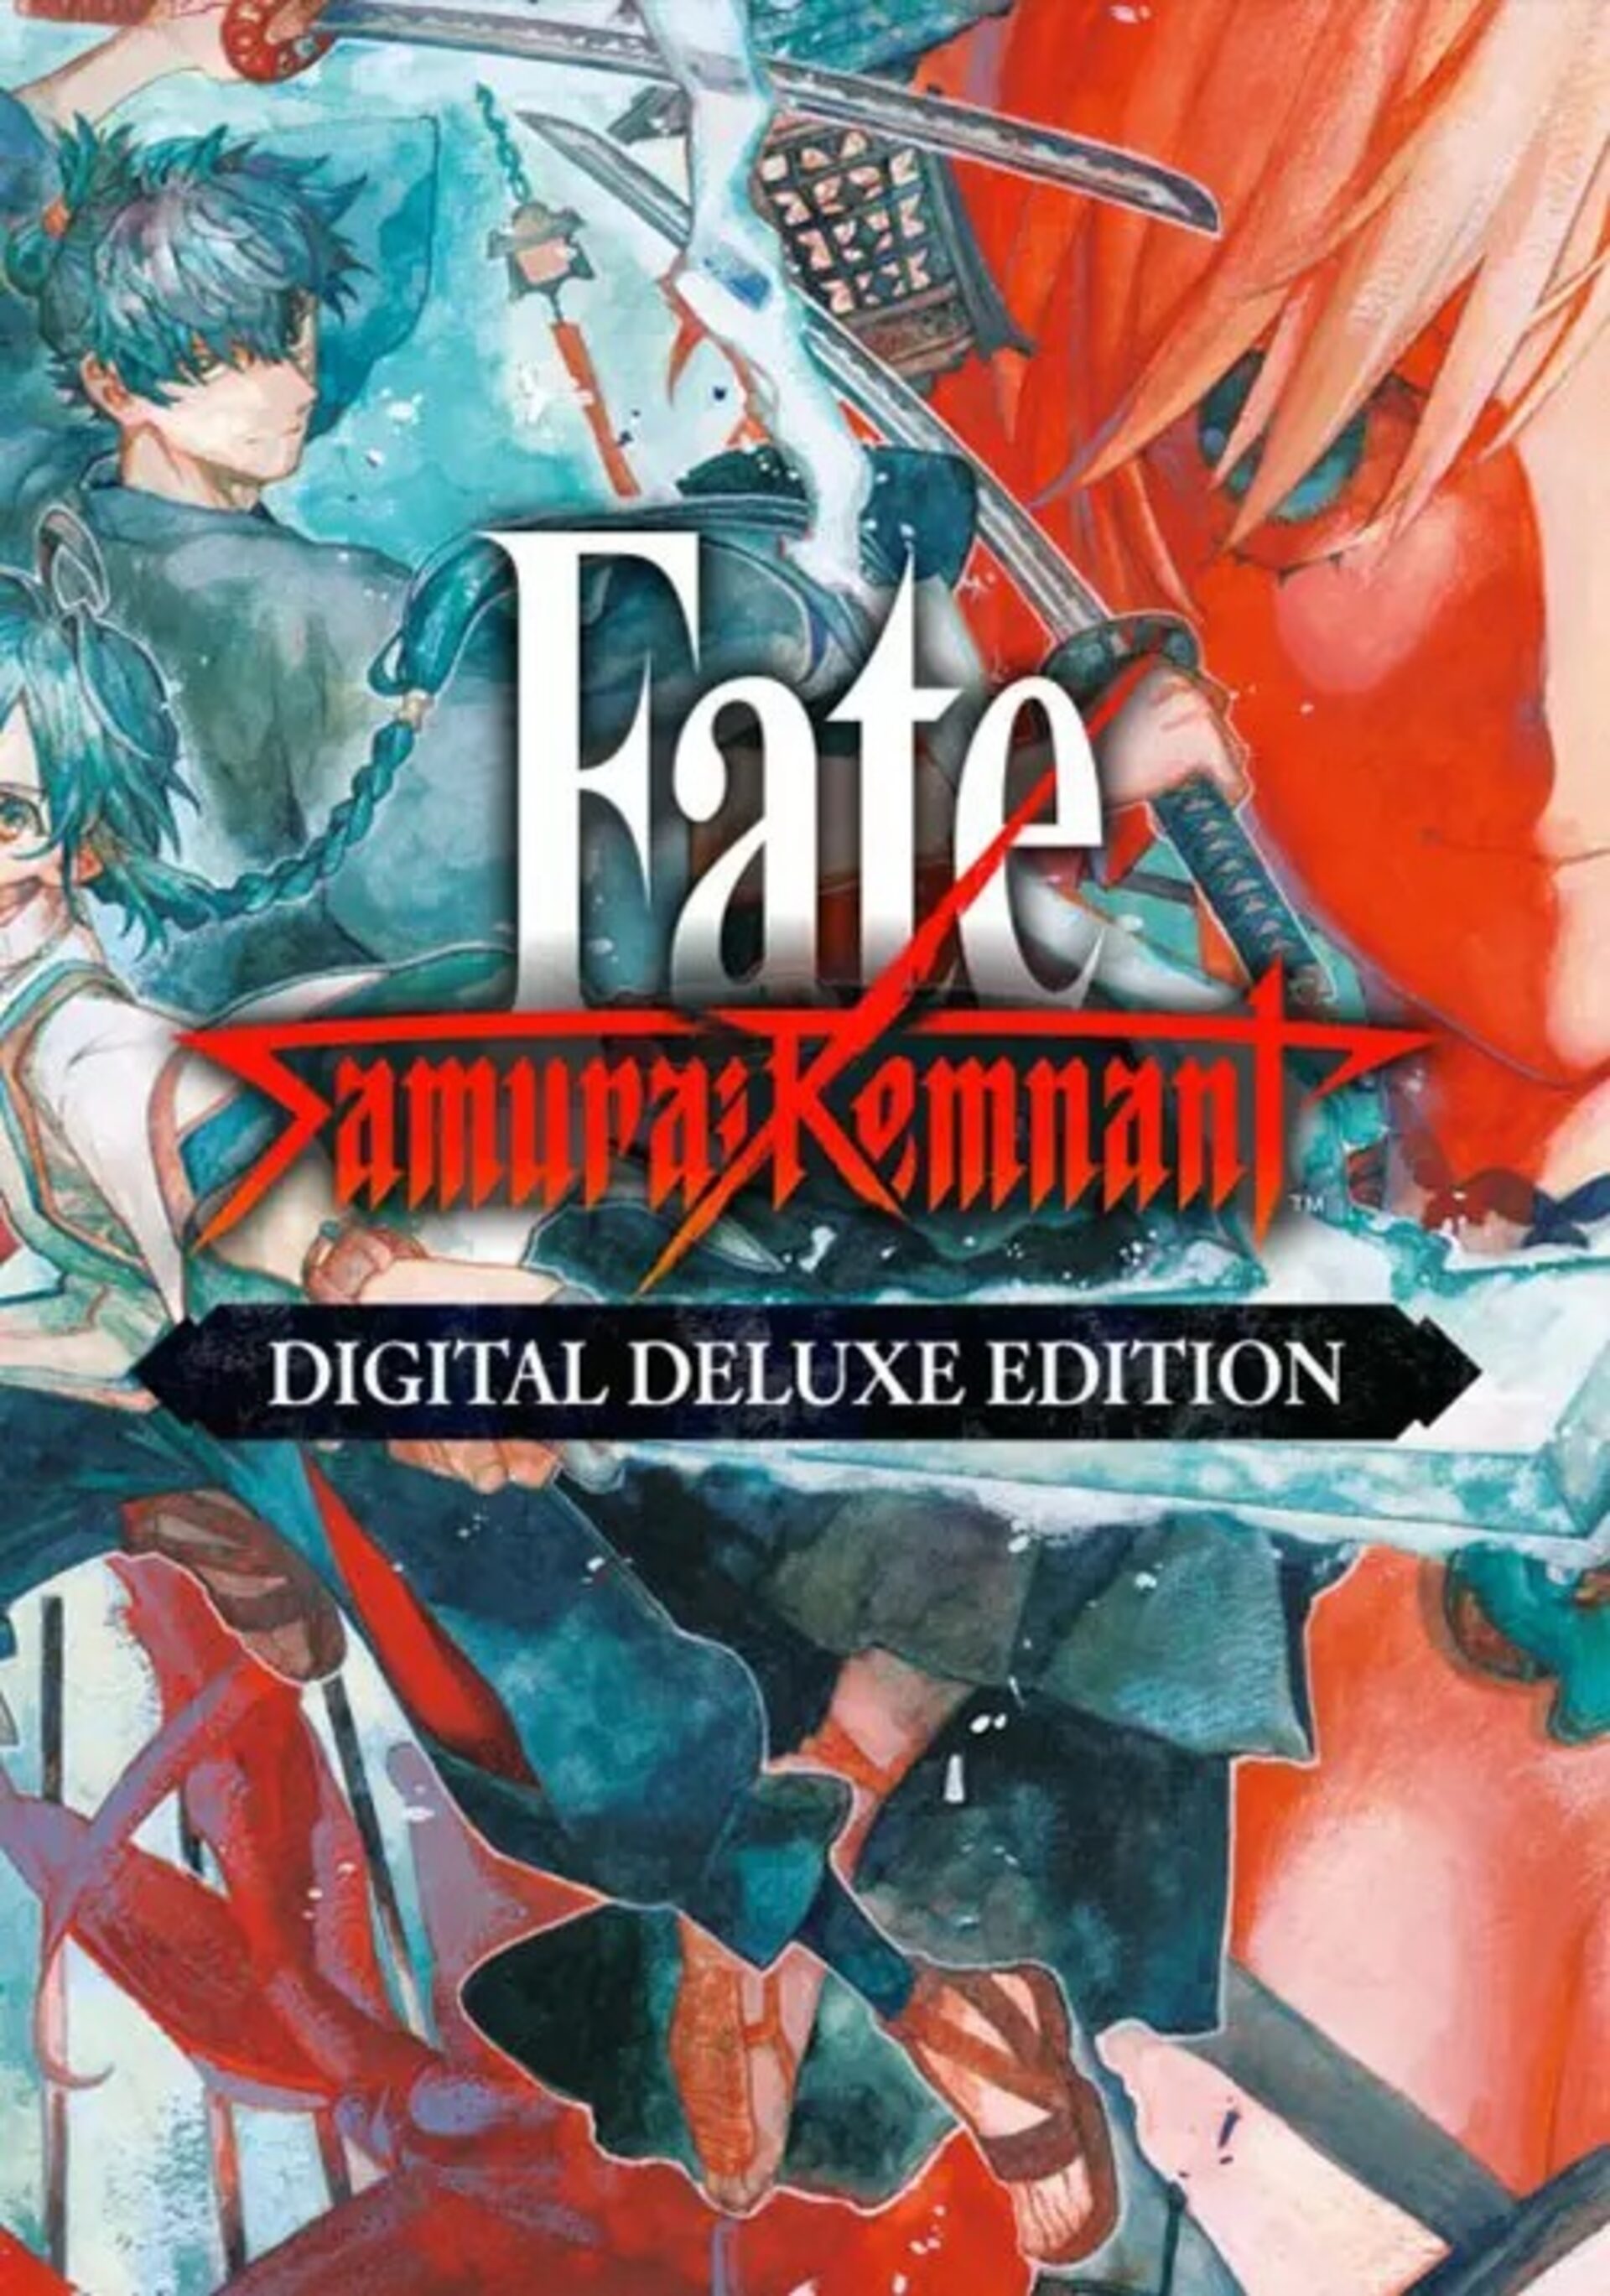 Fate/Samurai Remnant, PC Steam Game